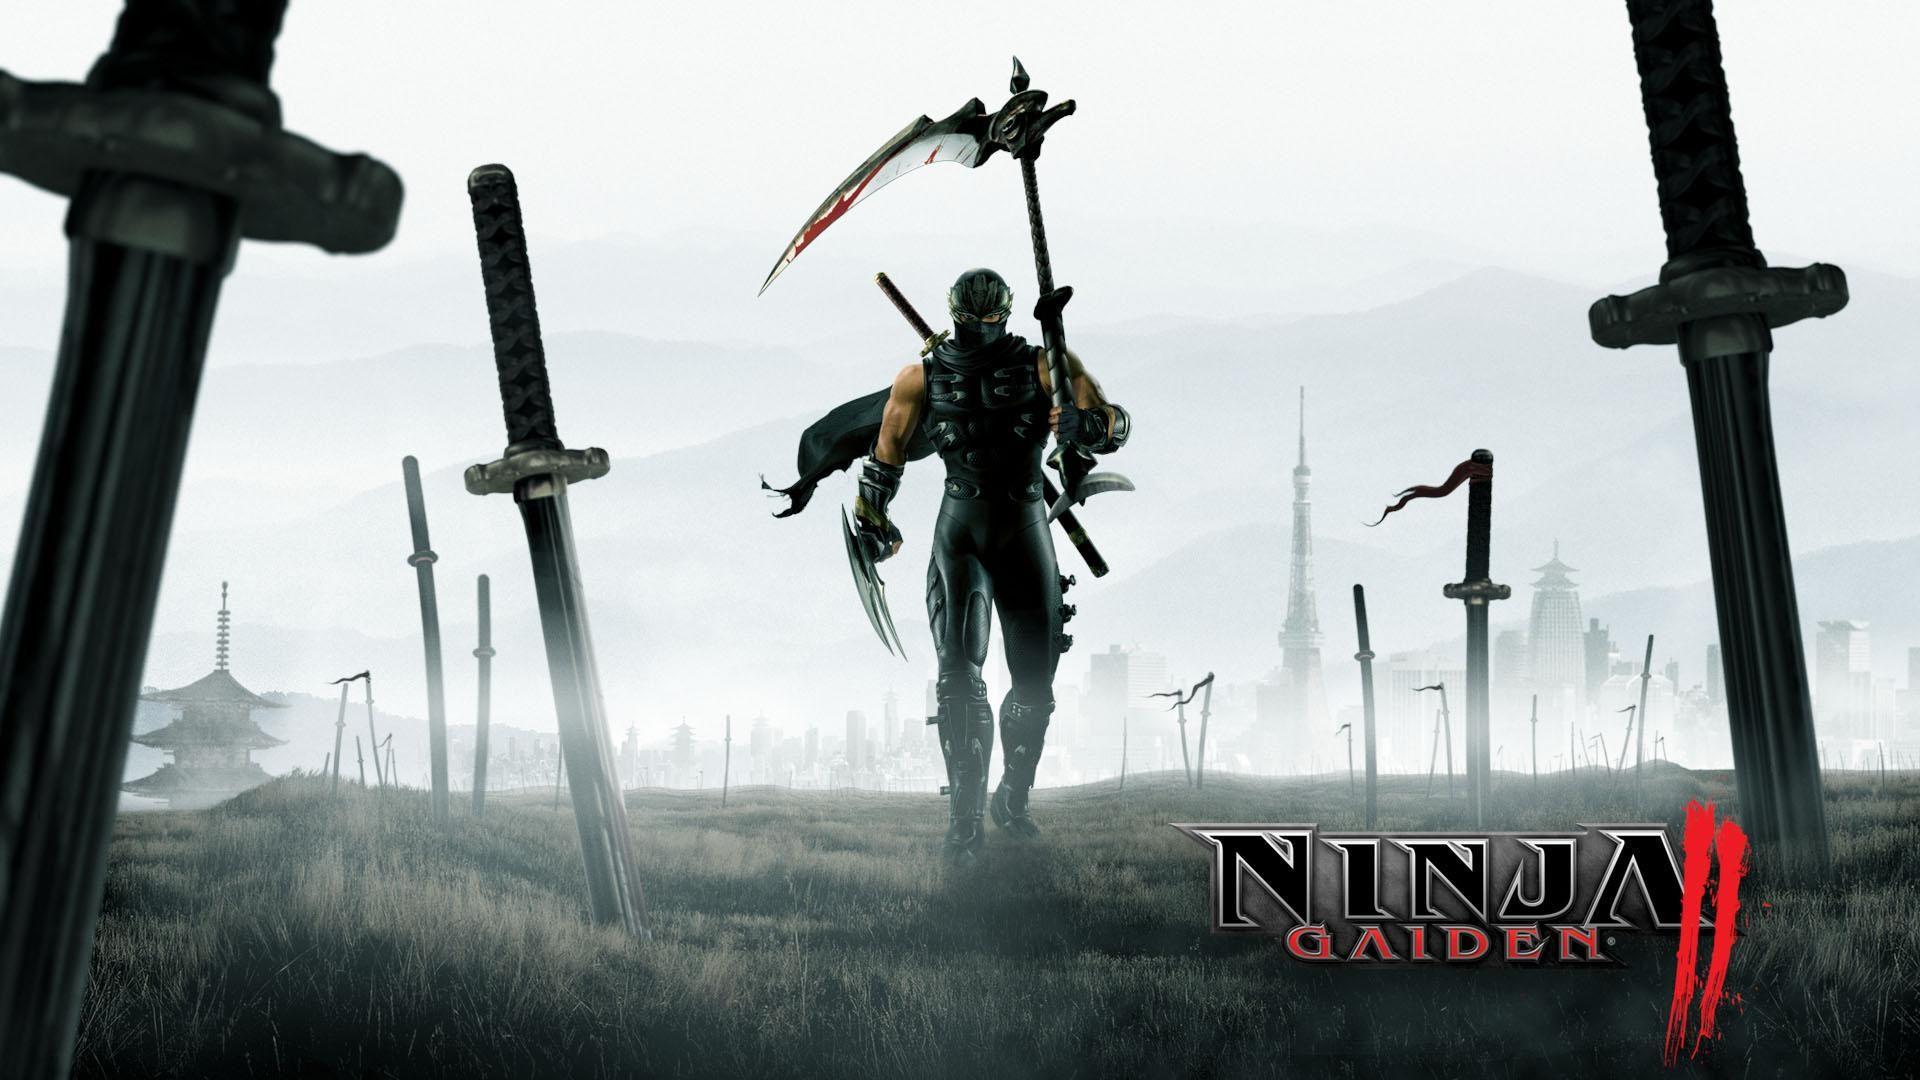 Ninja Gaiden Wallpaper HD Download